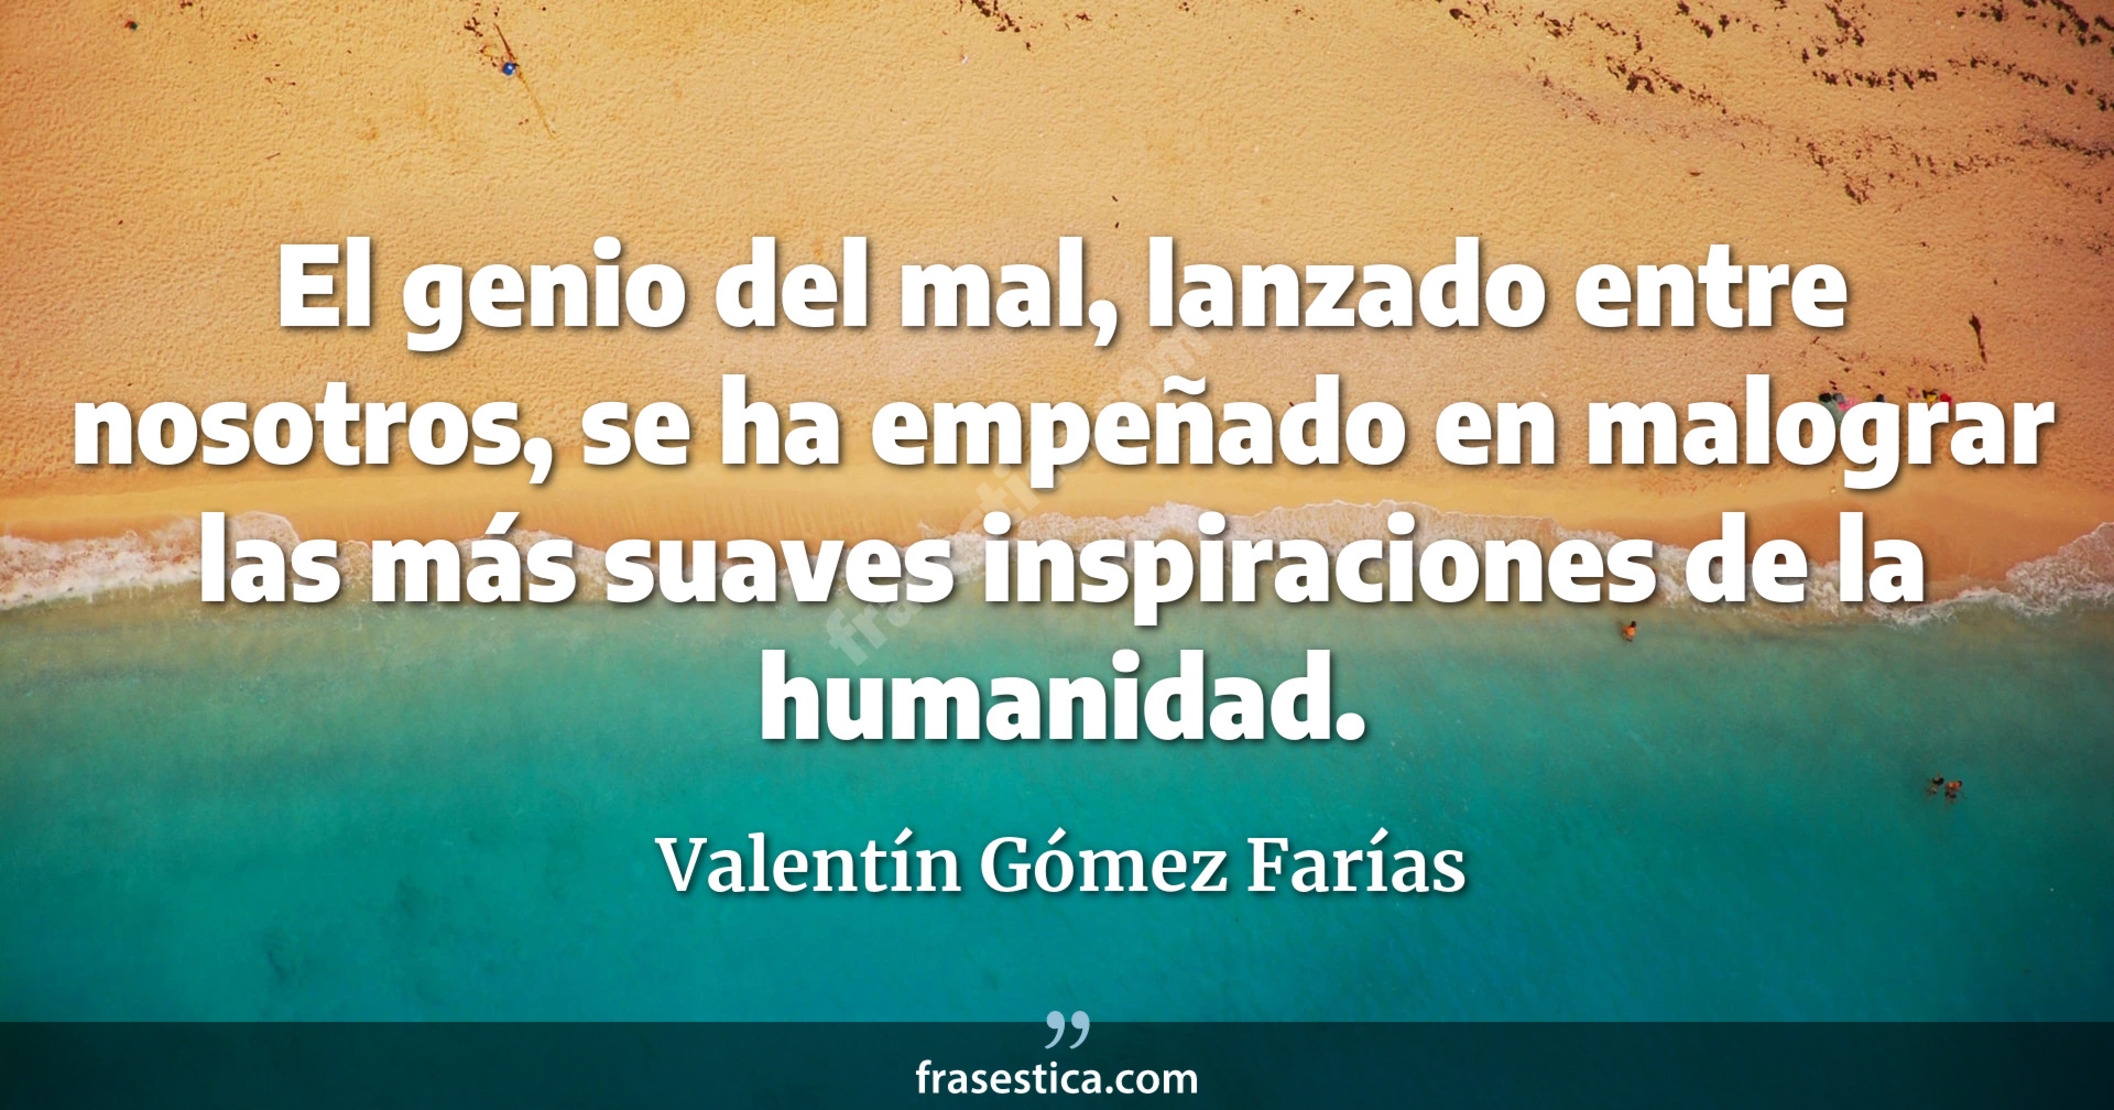 El genio del mal, lanzado entre nosotros, se ha empeñado en malograr las más suaves inspiraciones de la humanidad. - Valentín Gómez Farías